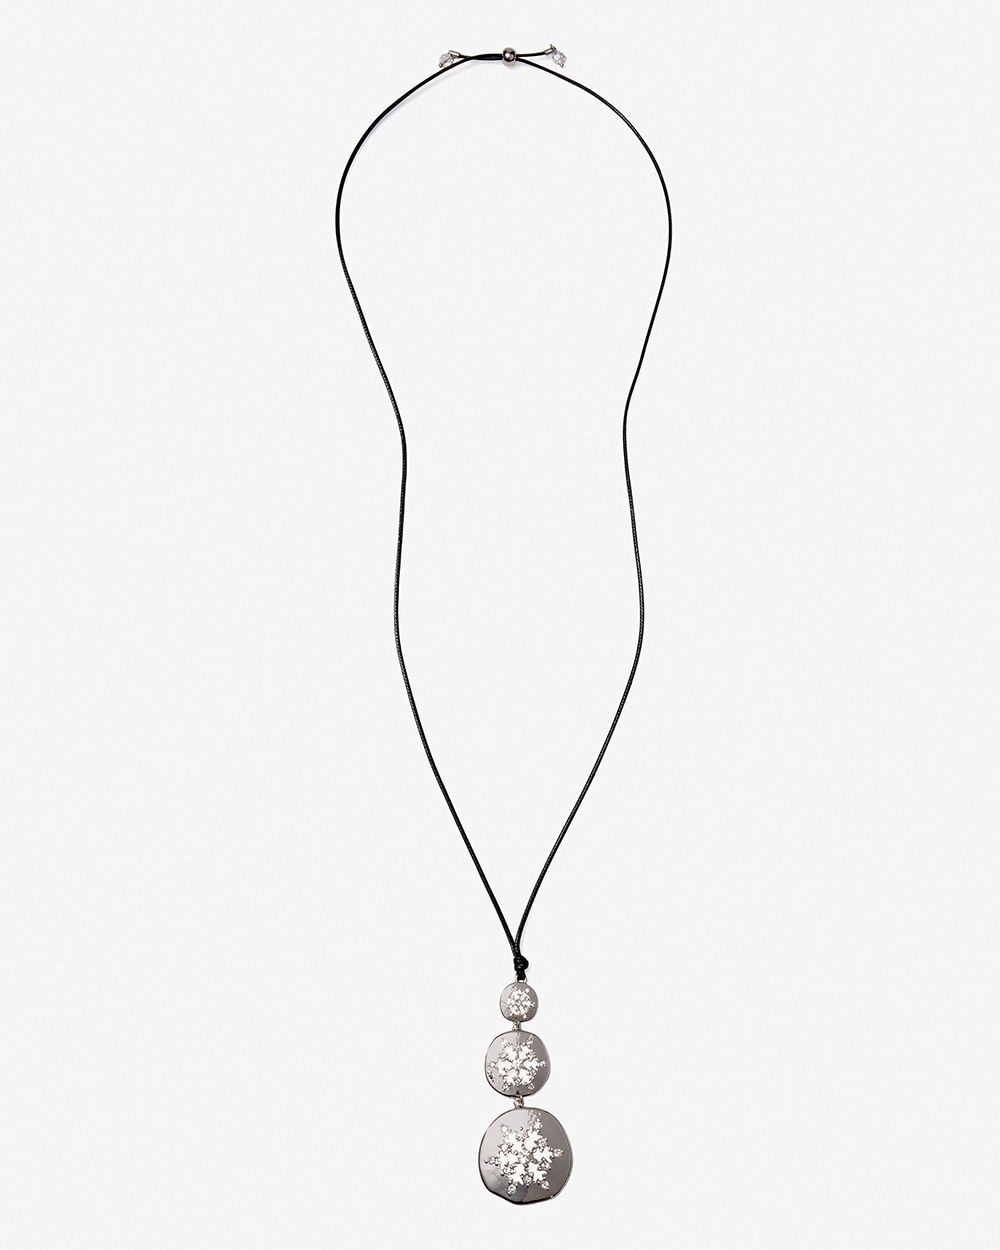 Silvertone Snowflakes Adjustable Necklace